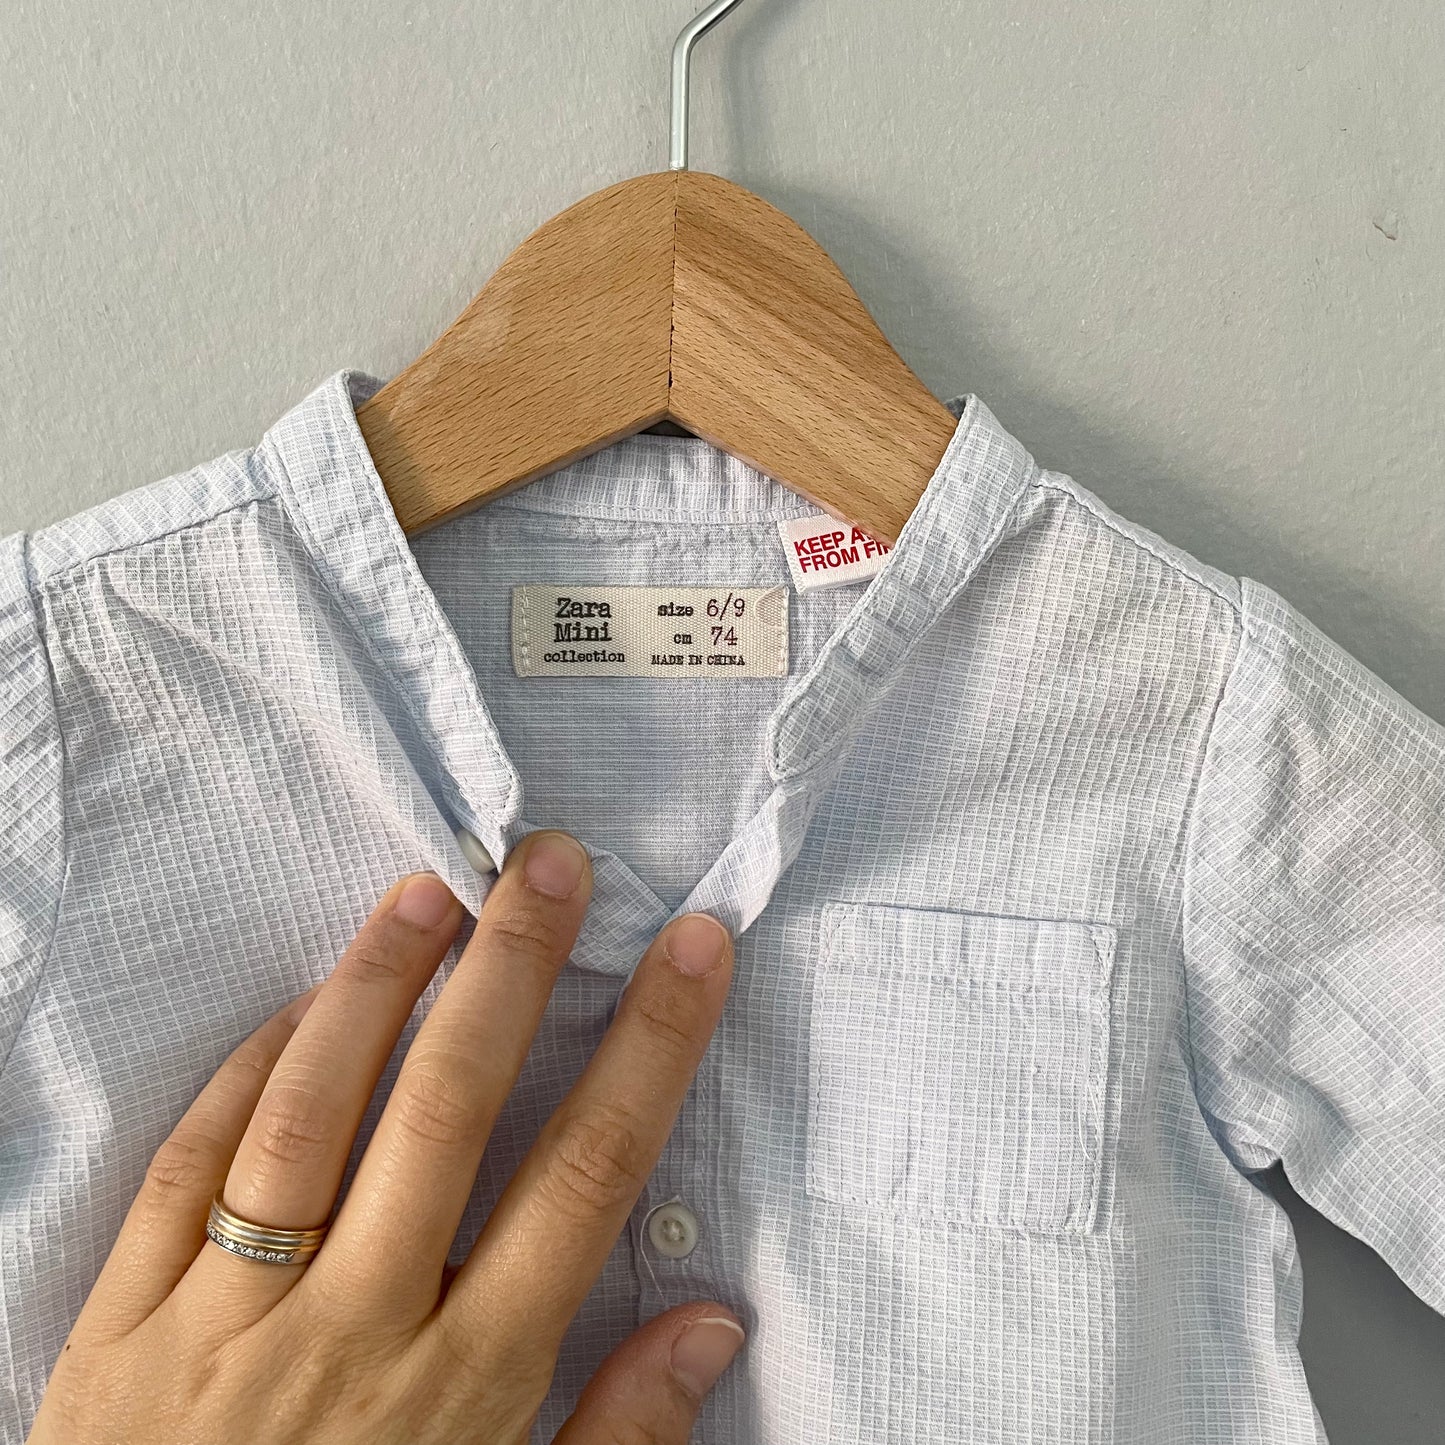 Zara / Cotton shirt / 6-9M